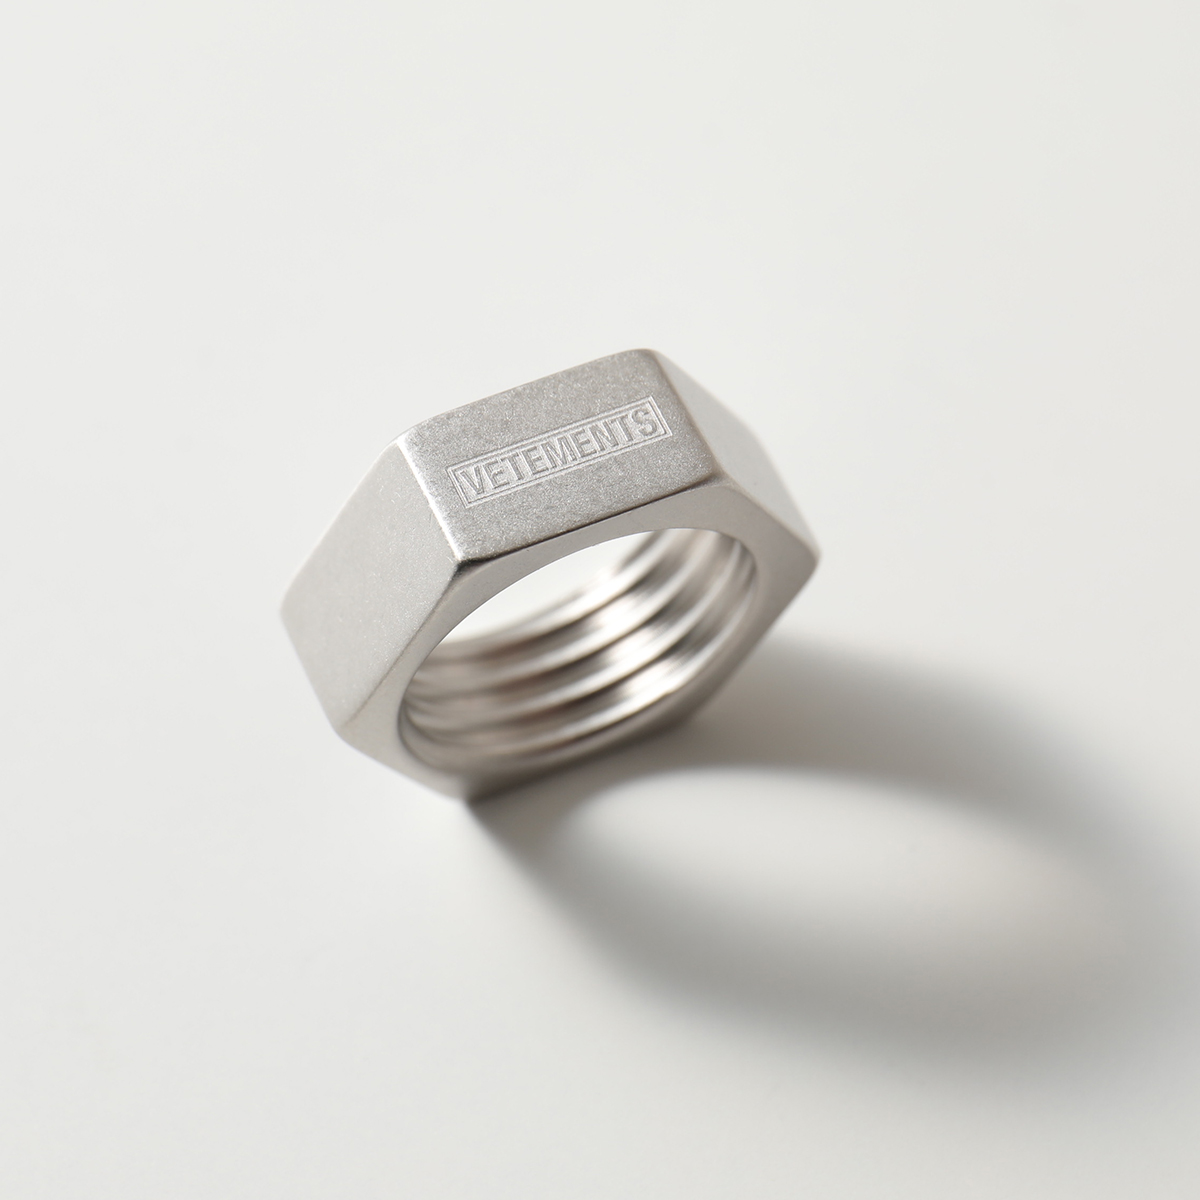 VETEMENTS ヴェトモン UAH21Rl170 Nut Ring Thin ナット リング 指輪 Silver レディース |  インポートセレクト musee